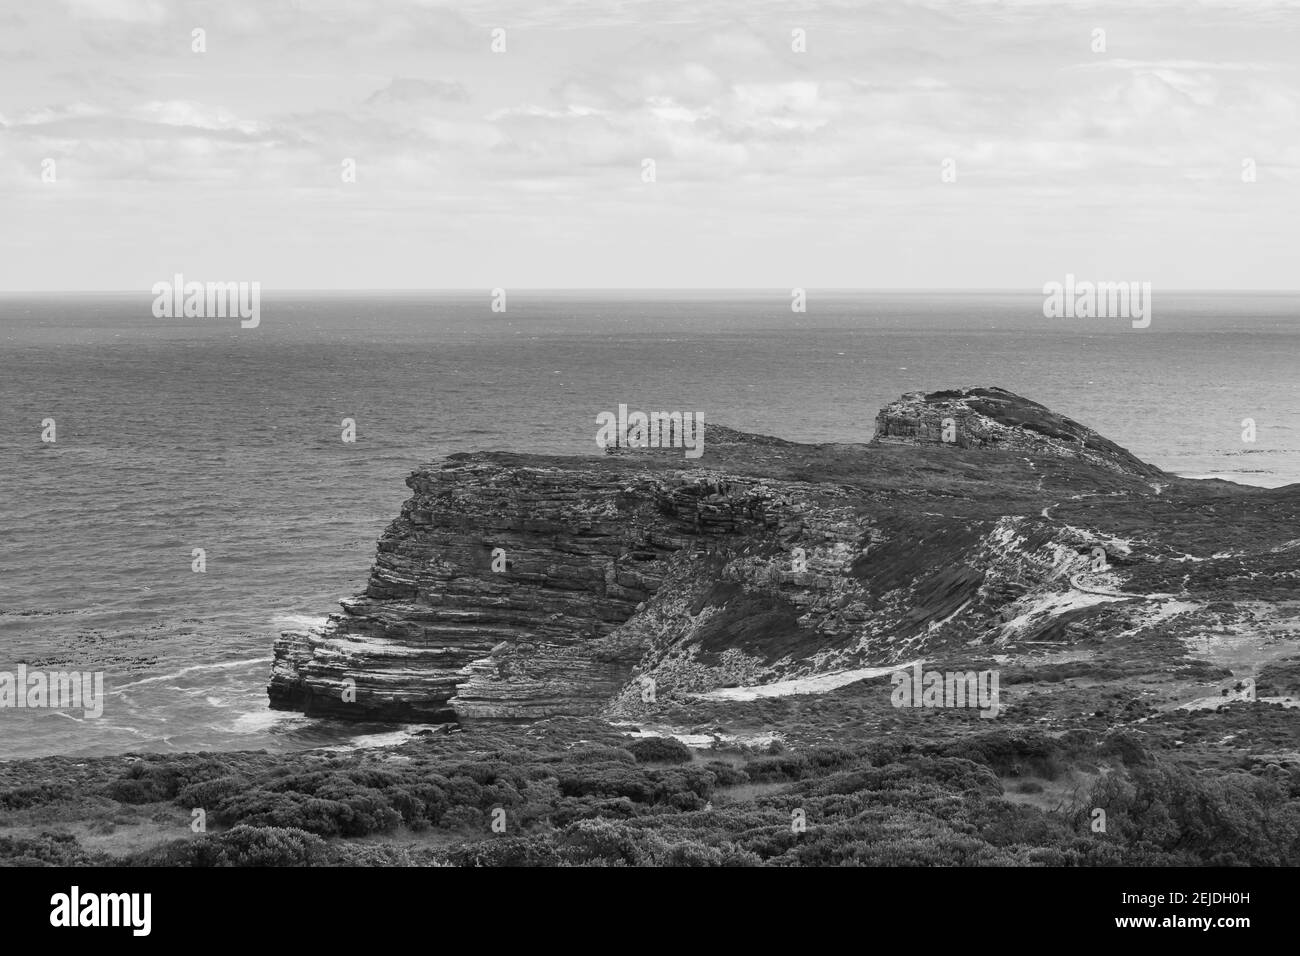 Cape Point- Kapstadt, Südafrika - 19-02-2021 Schwarz-weiß Aufnahme eines Berges mit kurvigen Konturen auf der Kap-Halbinsel. Ozean im Hintergrund. Stockfoto